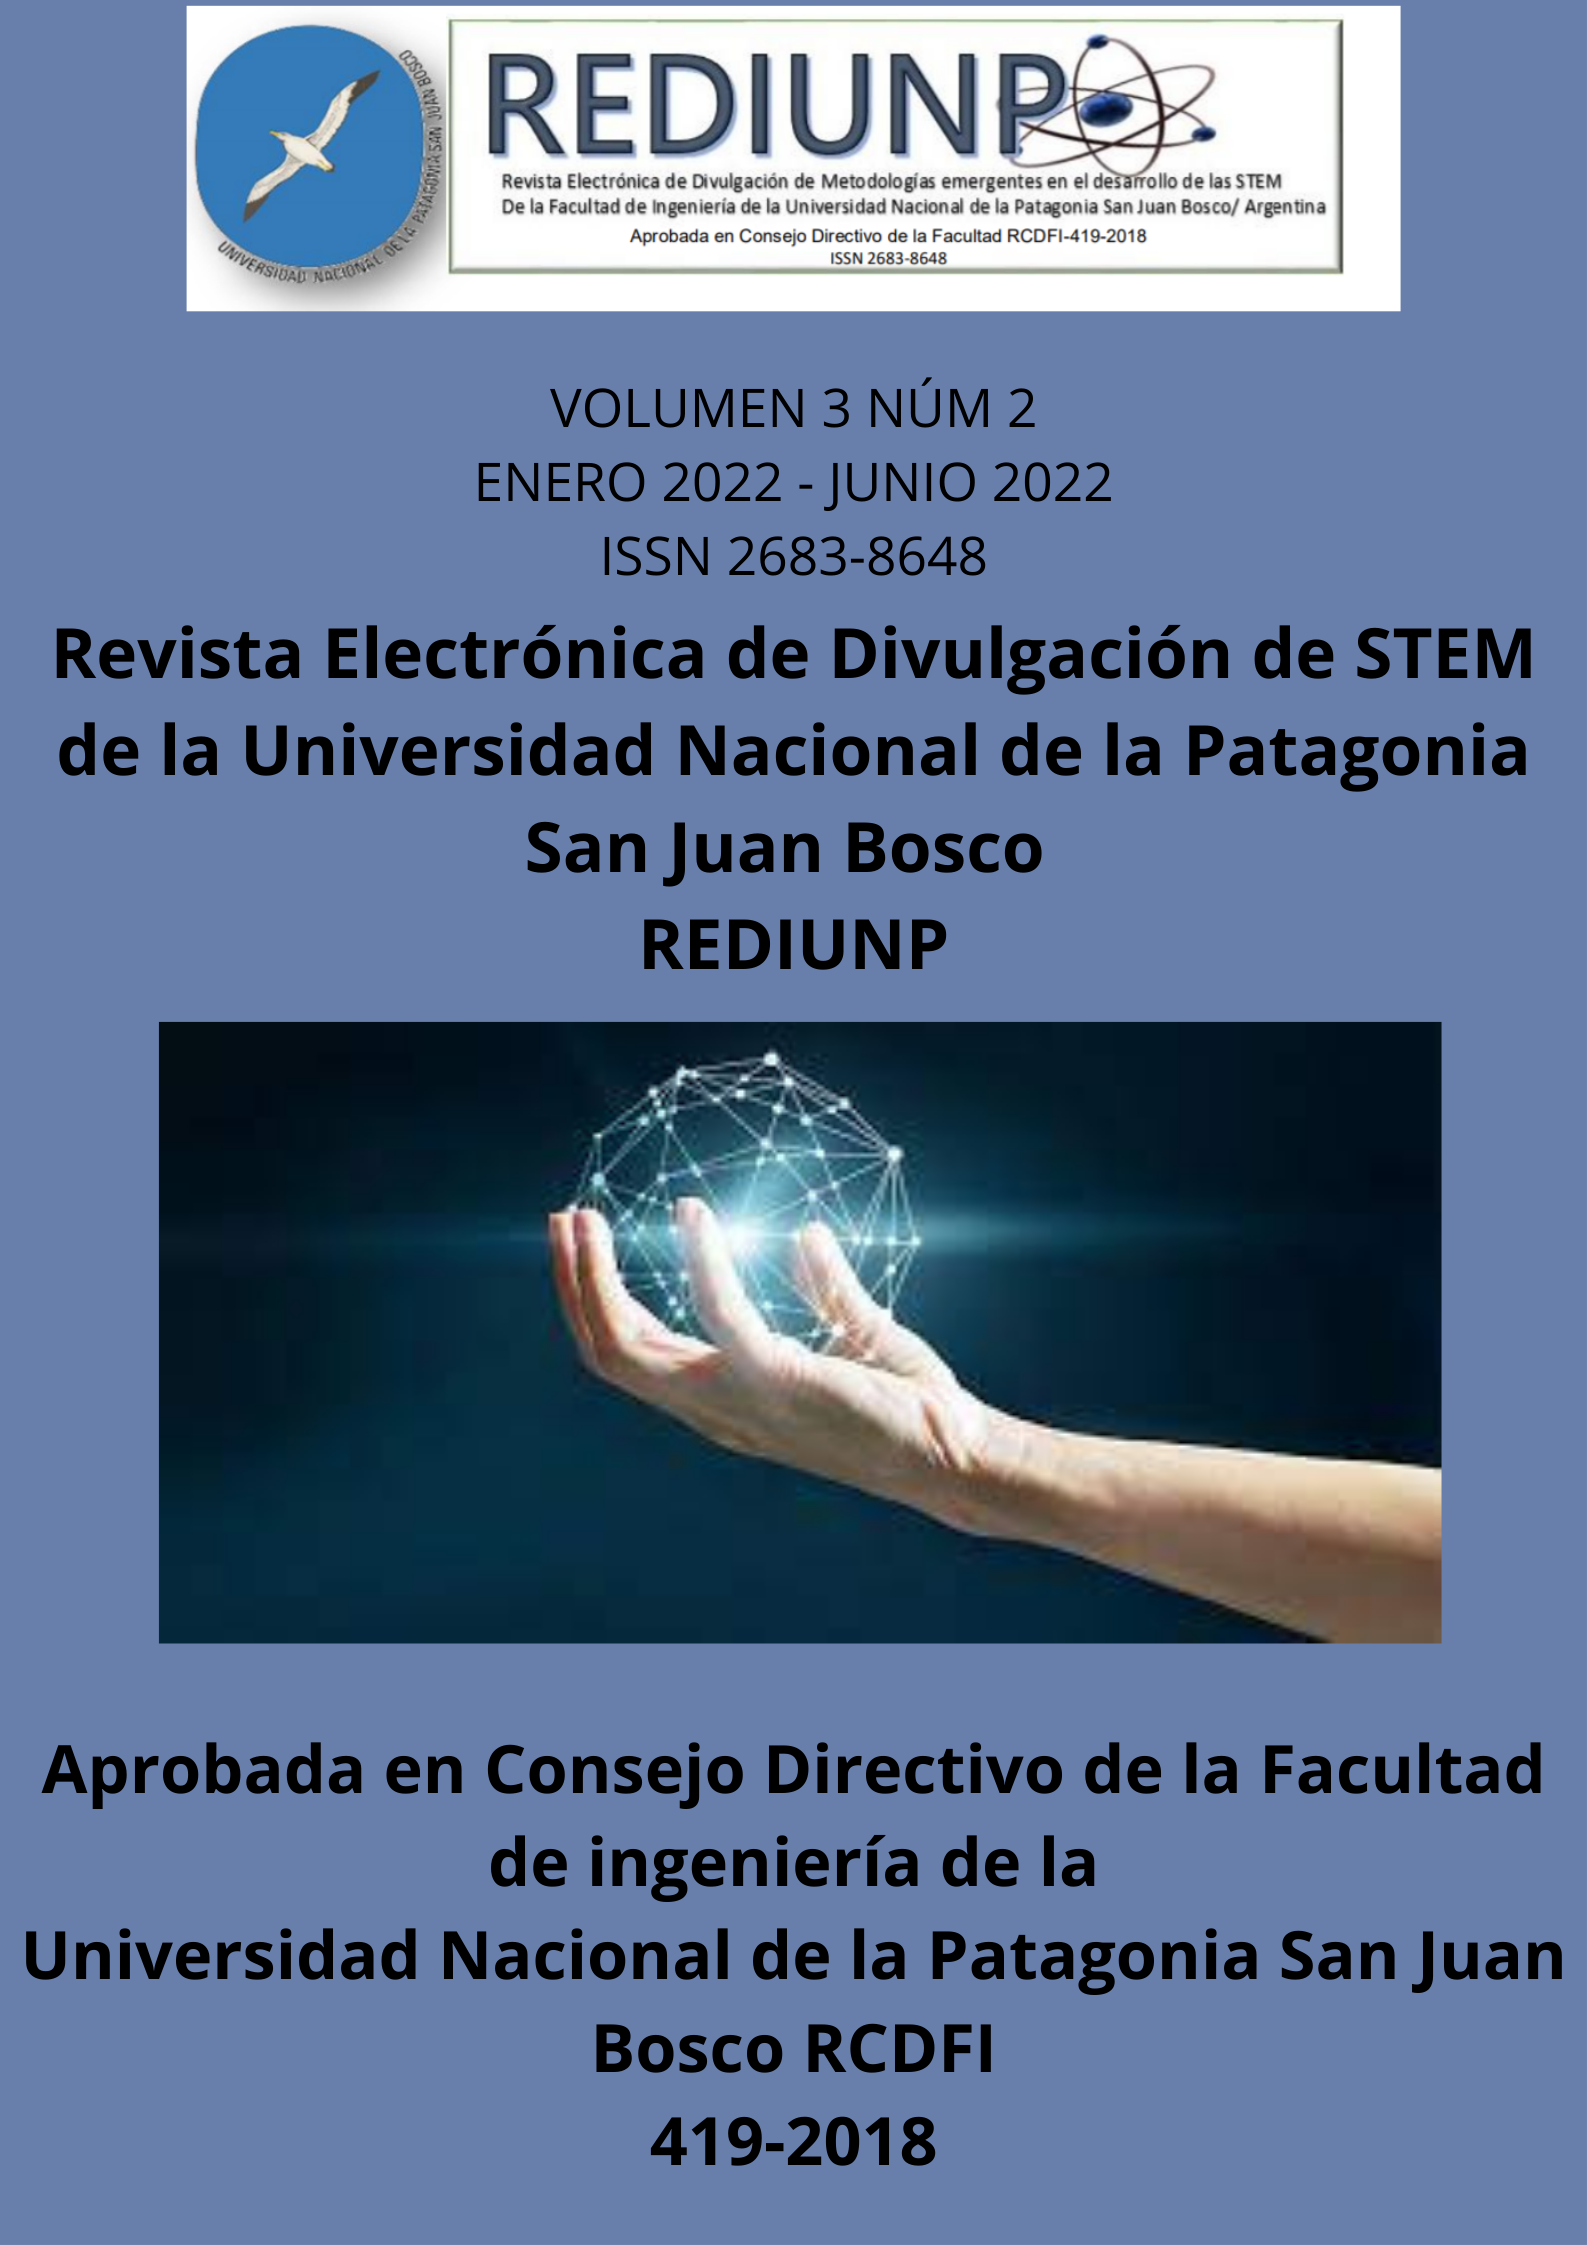 					Ver Vol. 3 Núm. 2 (2021): Revista Electrónica de divulgación de STEM de la Facultad de Ingeniería de la Universidad Nacional de la Patagonia San Juan Bosco.
				